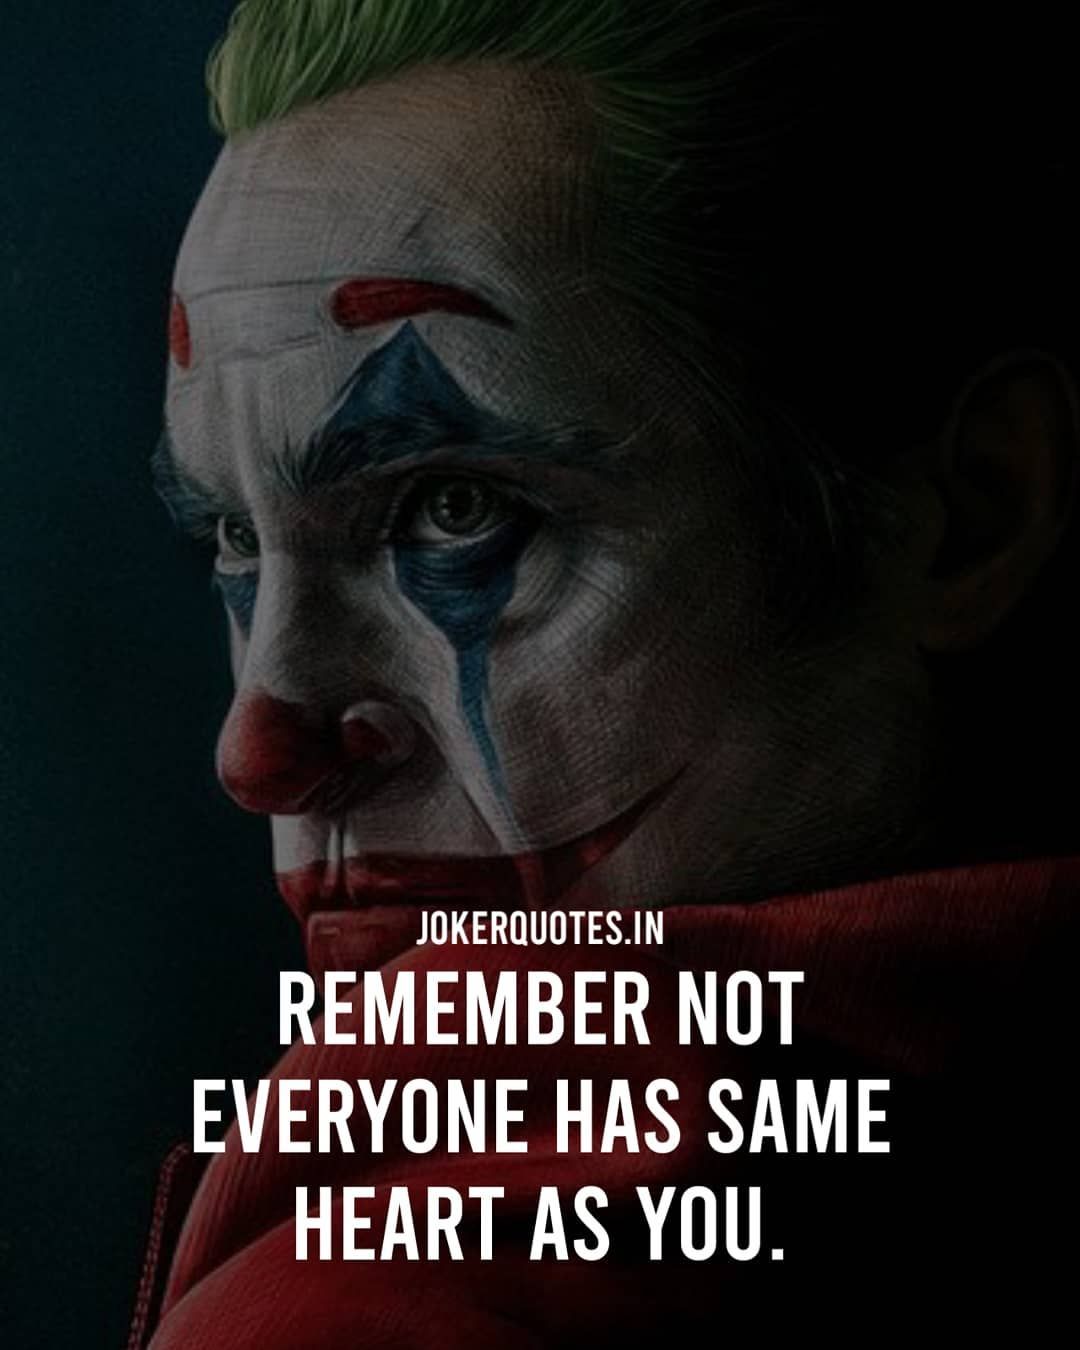 Joker quotes on attitude